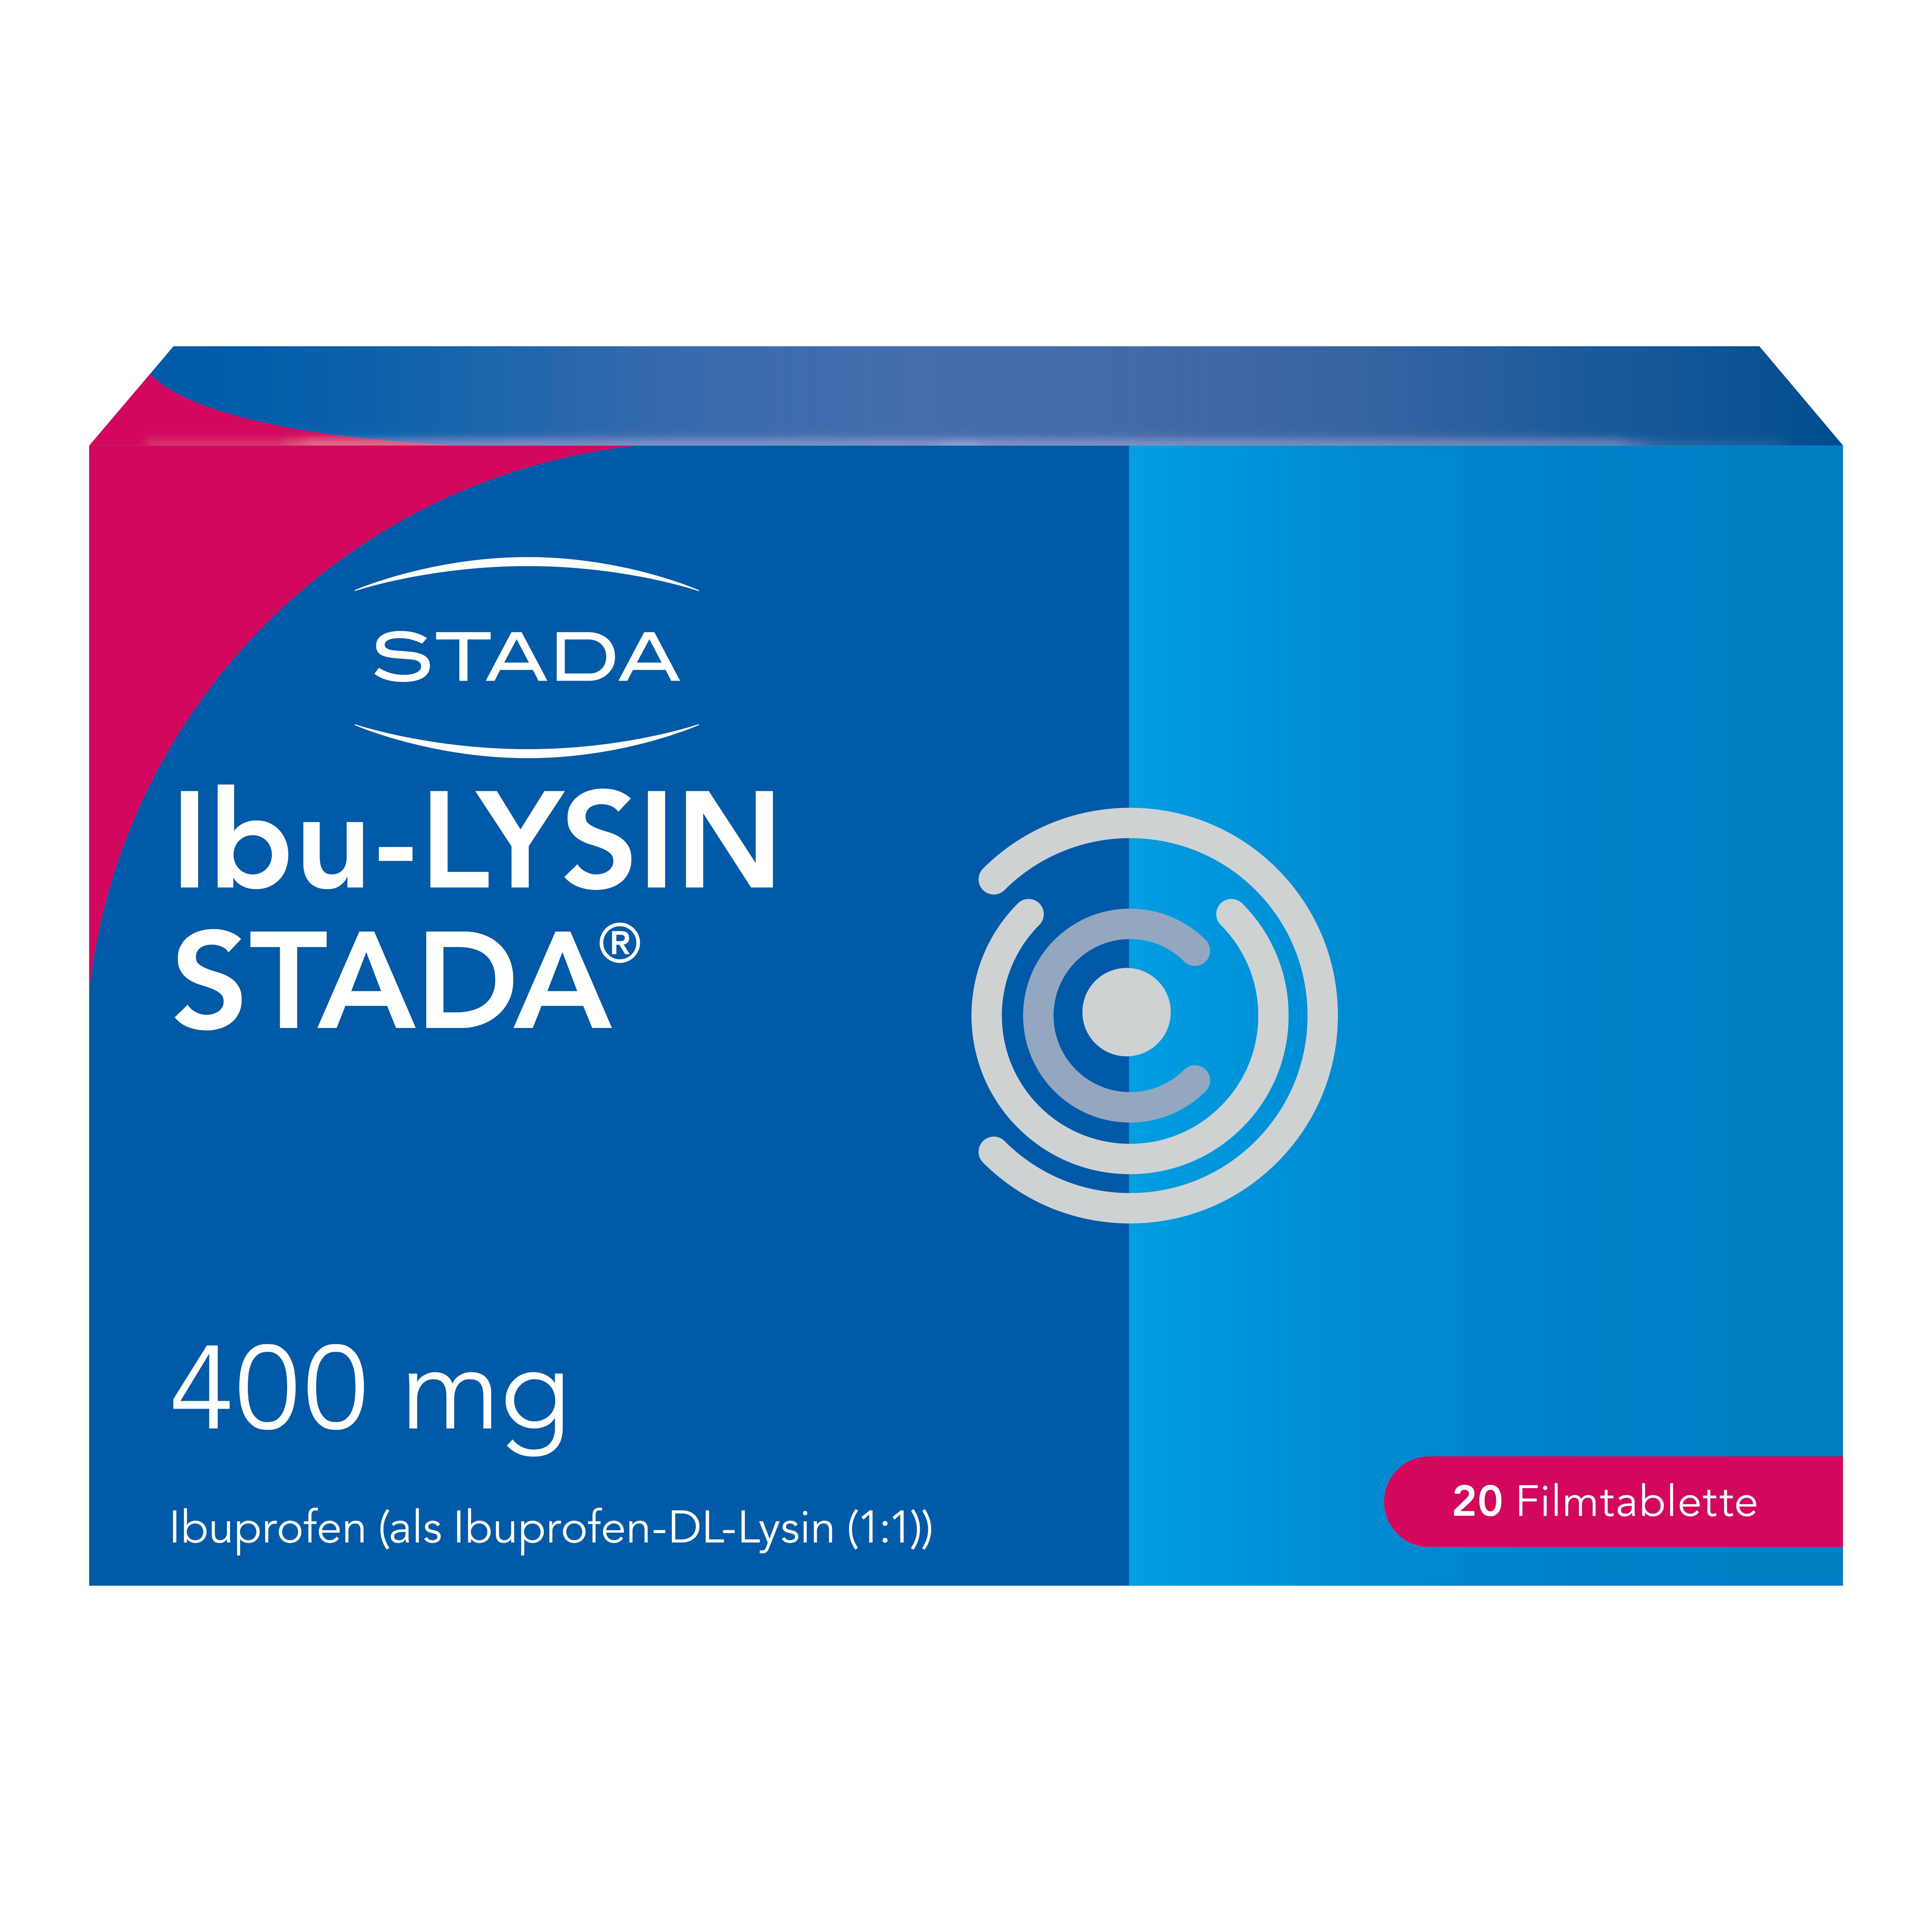 Ibu-LYSIN Stada® 400 mg Filmtabletten, wirksam bei Schmerzen und Fieber